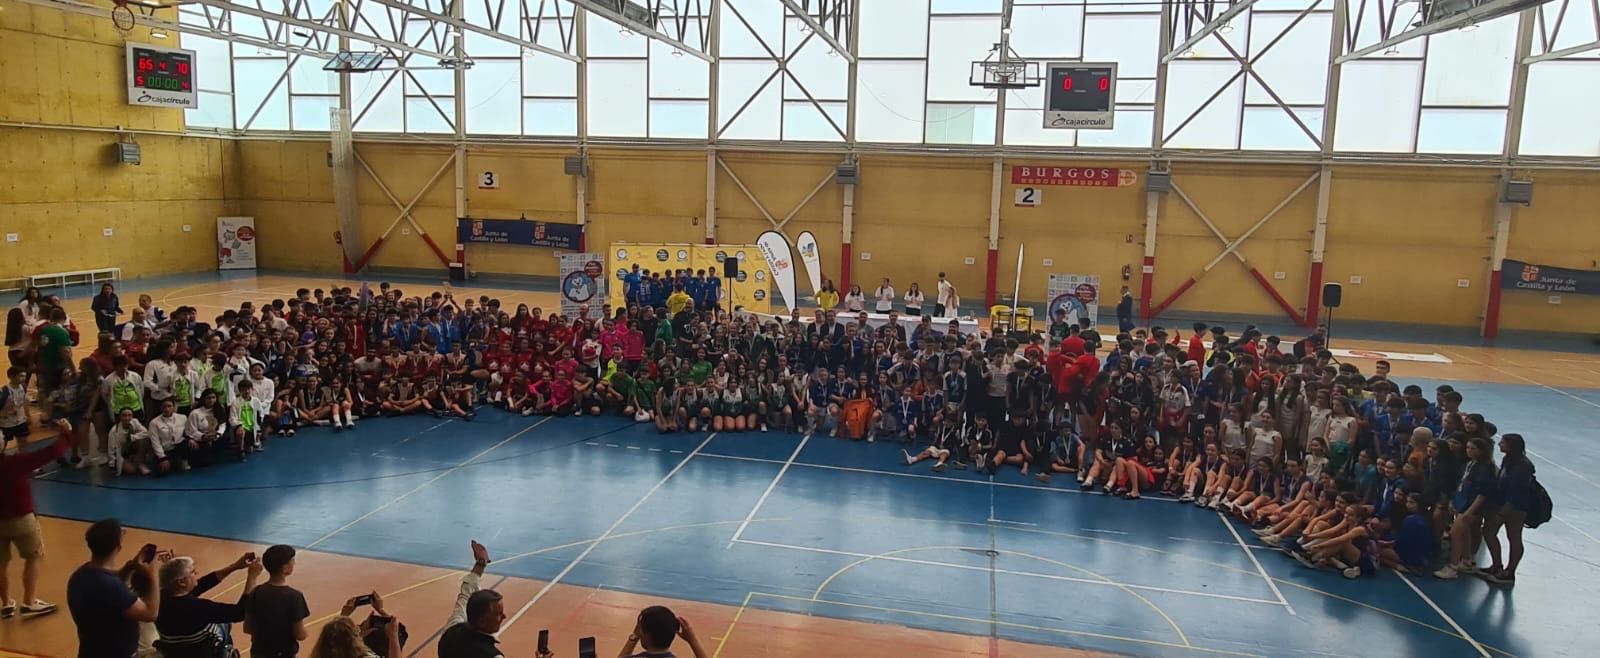 El Santa Marta FS femenino, campeón de Castilla y León de Juegos Escolares